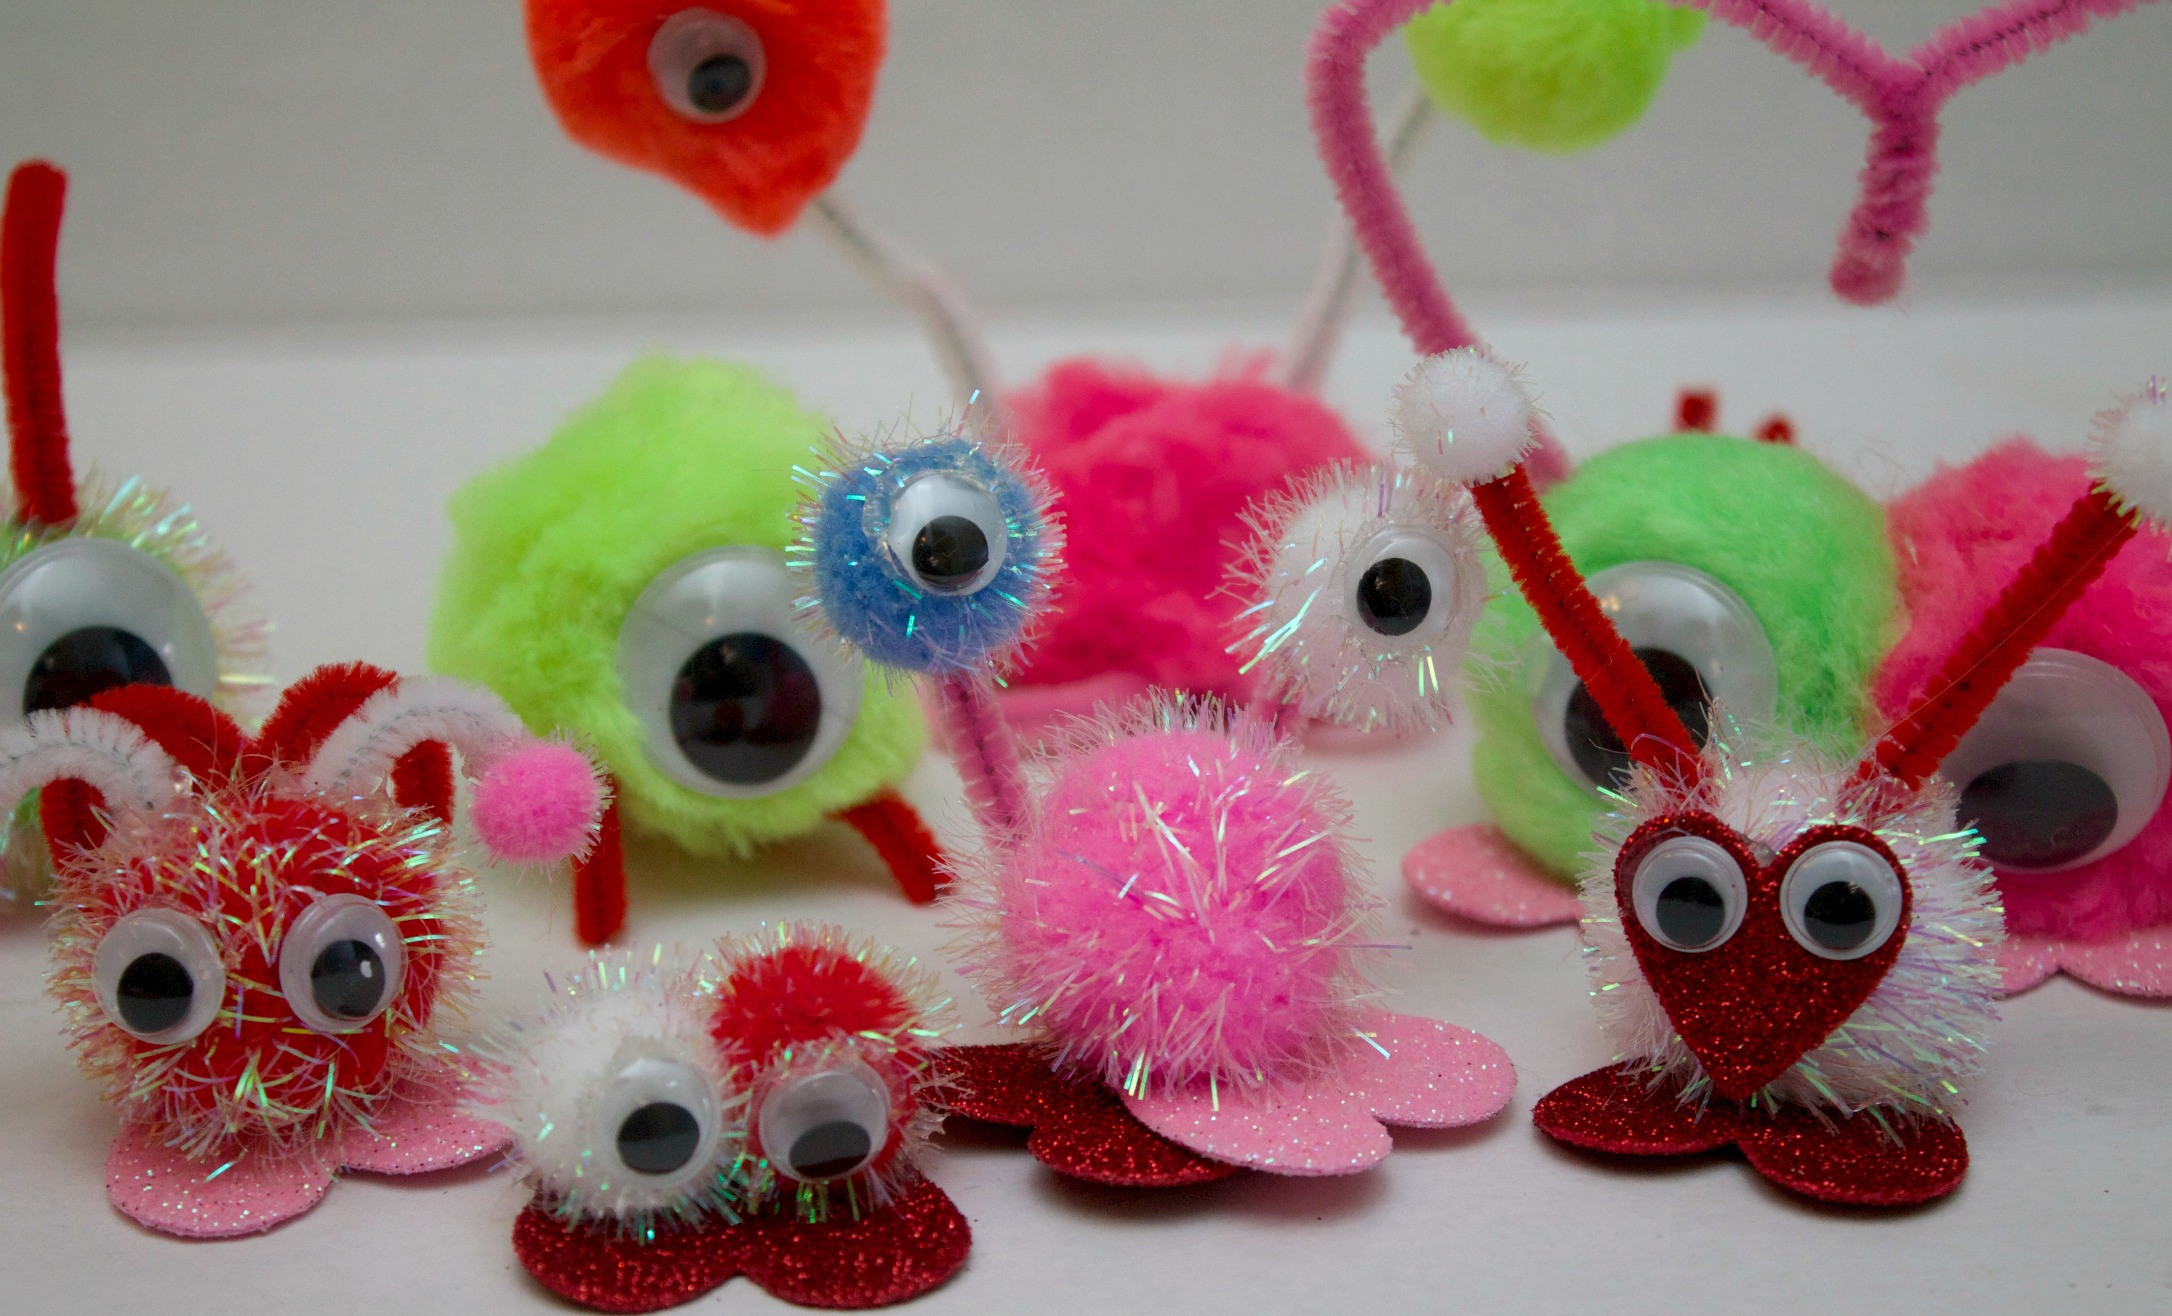 Best ideas about Valentine Craft Ideas
. Save or Pin Valentine Craft Ideas For Kids Love Bugs Now.